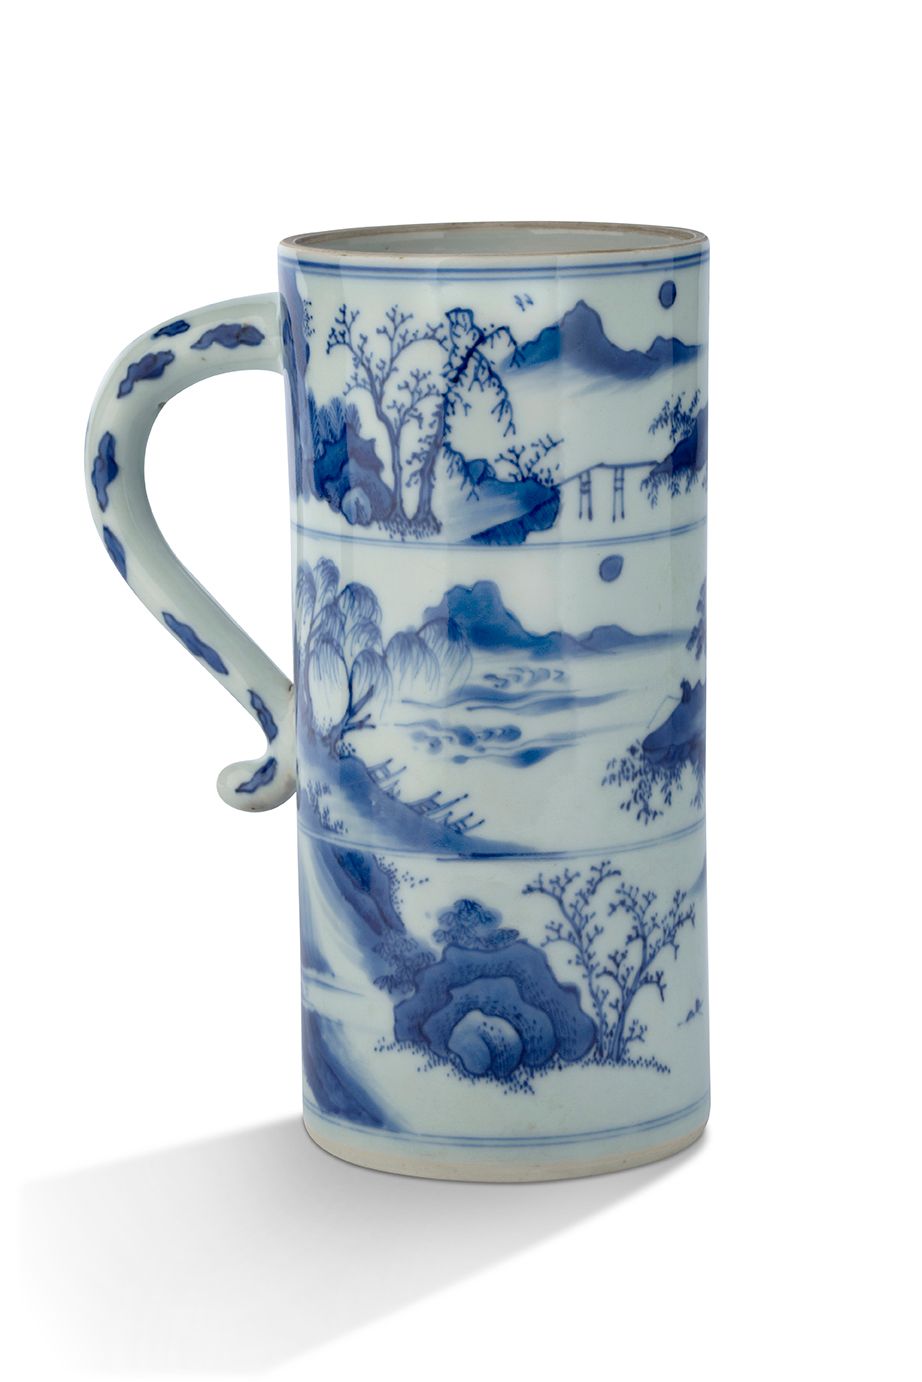 CHINE DYNASTIE MING, PÉRIODE CHONGZHEN, VERS 1640 Krug
Aus blau-weißem Porzellan&hellip;